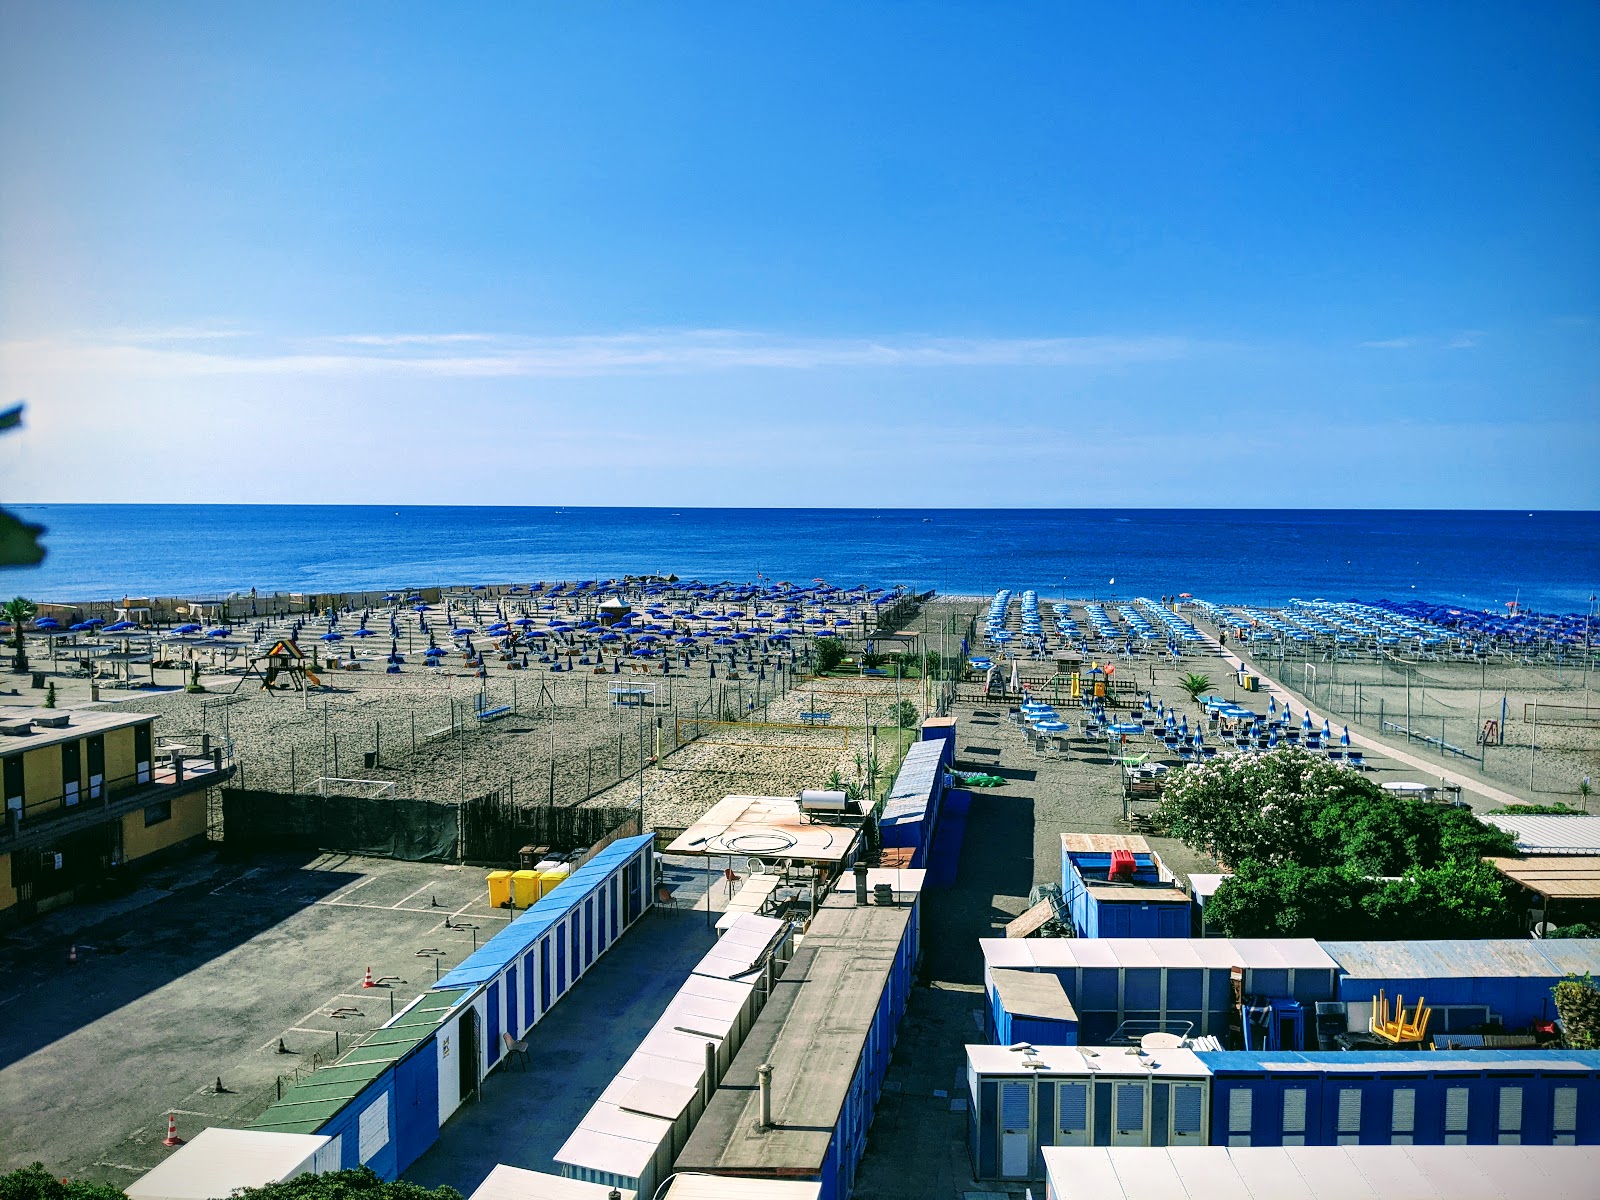 Foto av Spiaggia Tito Groppo med blått vatten yta